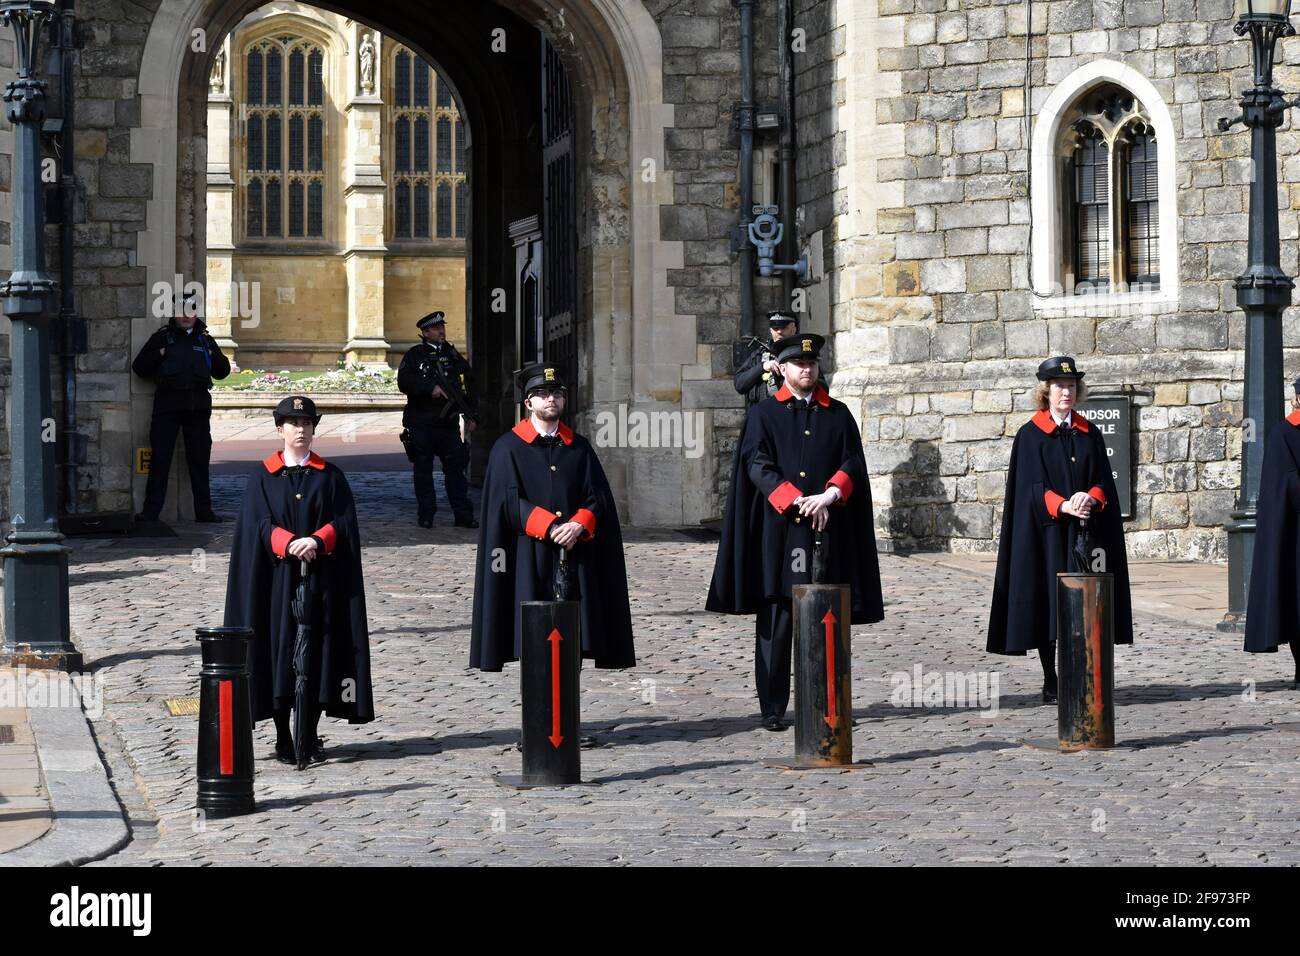 Windsor, Großbritannien, 16. April 2020 Wärterinnen. Die St. George's Chapel wurde vor den Vorbereitungen für die Beerdigung geschützt. Schloss Windsor ist mit Touristen beschäftigt und bereitet sich auf die Beerdigung von Prinz Phillip, dem Herzog von Edinburgh, vor. Kredit: JOHNNY ARMSTEAD/Alamy Live Nachrichten Stockfoto